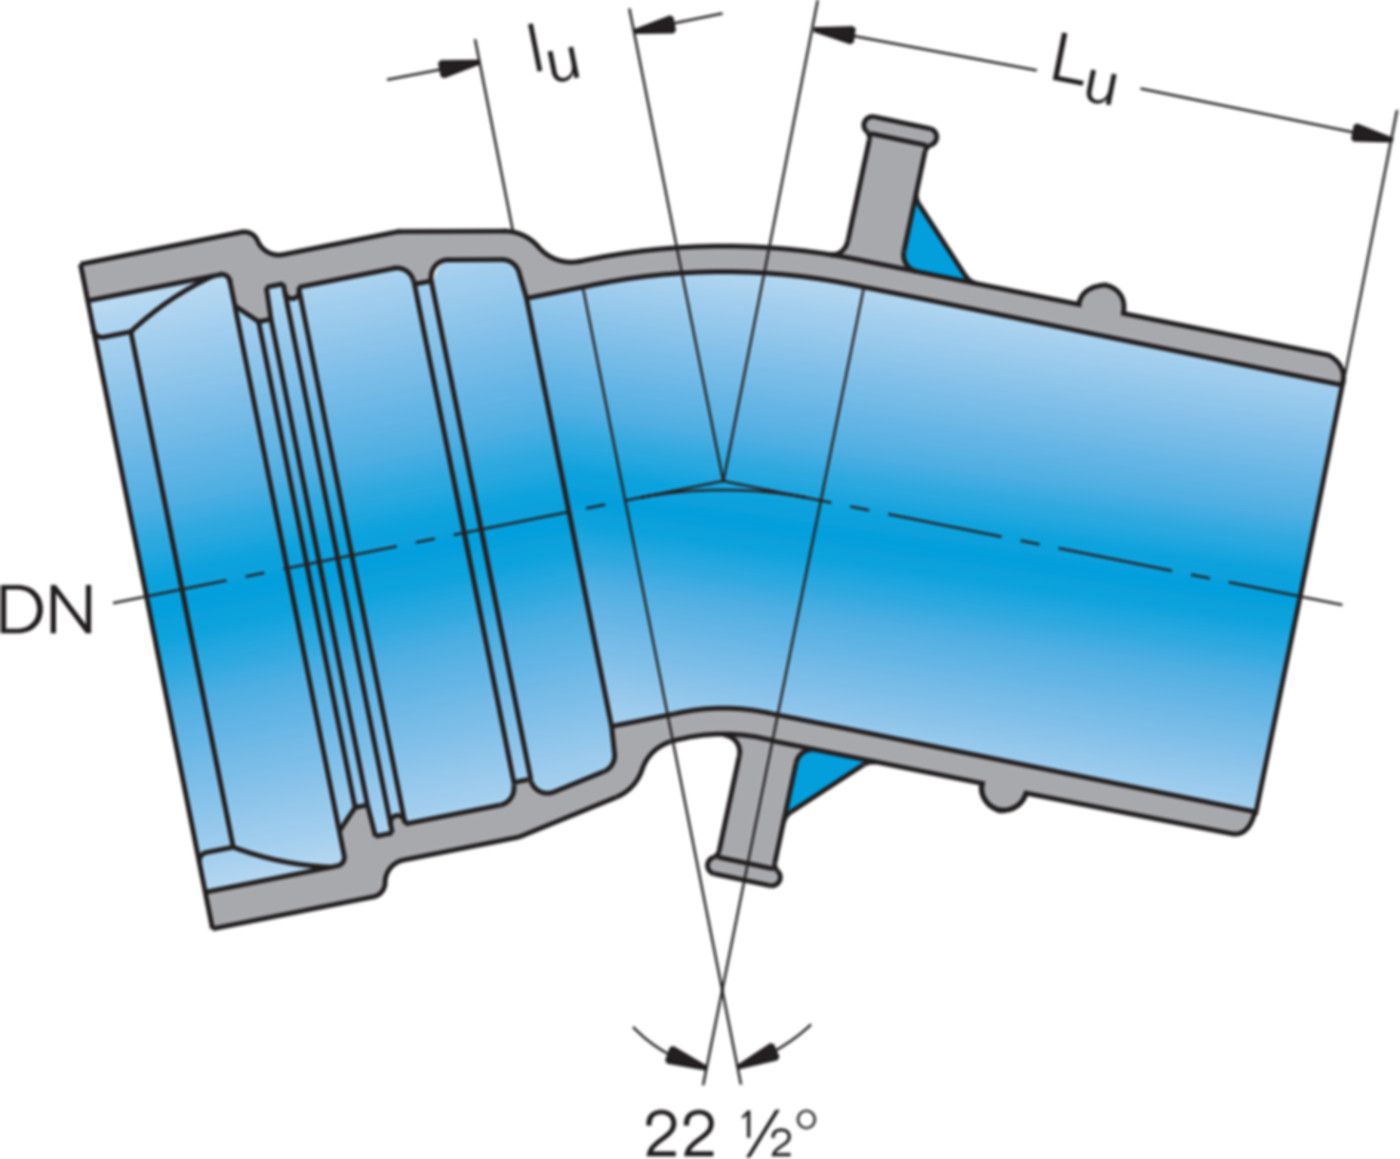 1-Muffe-Bogen MK 22° System BLS DN 300 - Frischhut Steckmuffenformstücke